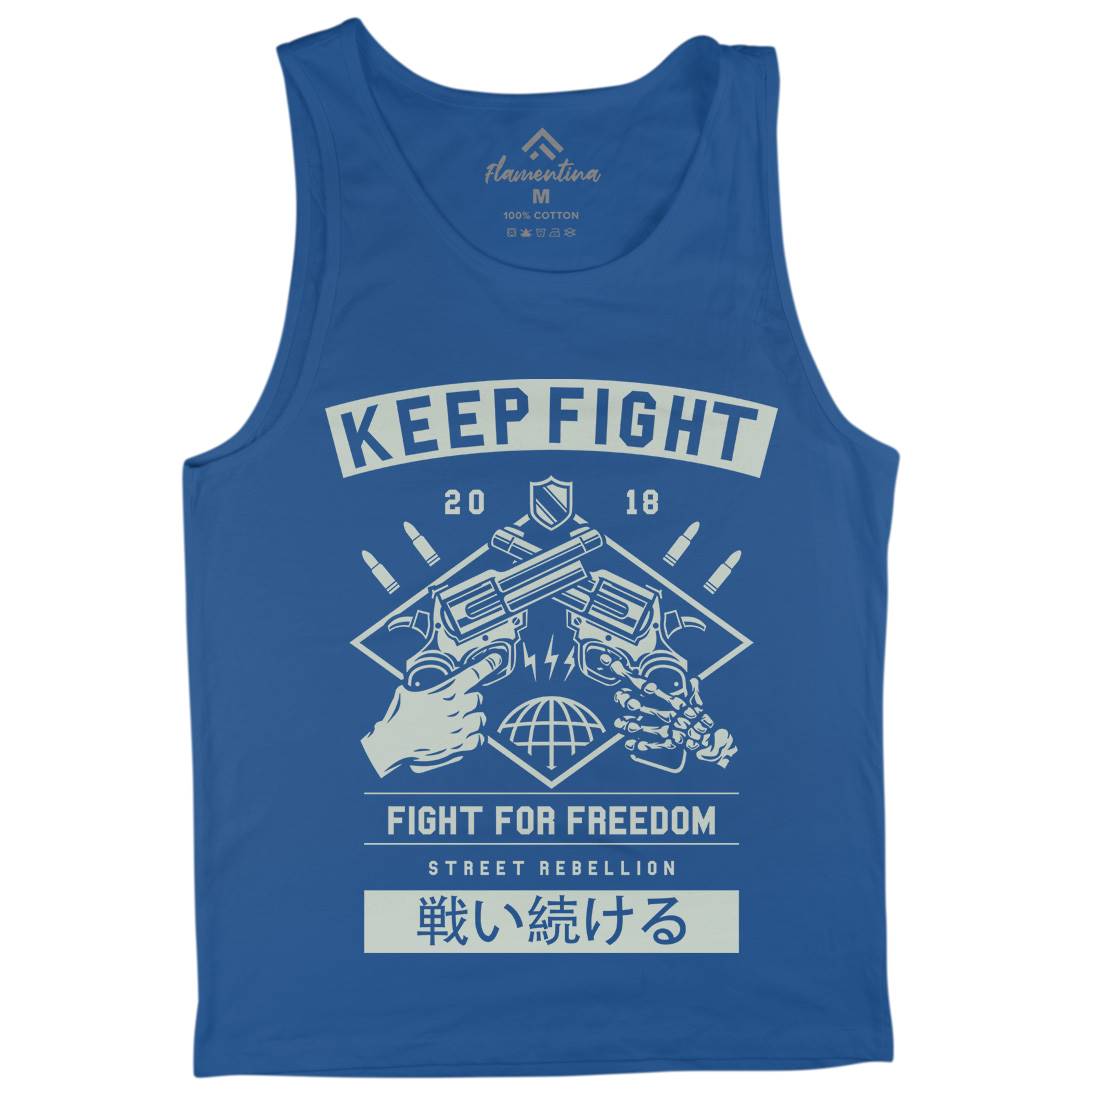 Keep Fight Mens Tank Top Vest Illuminati A245